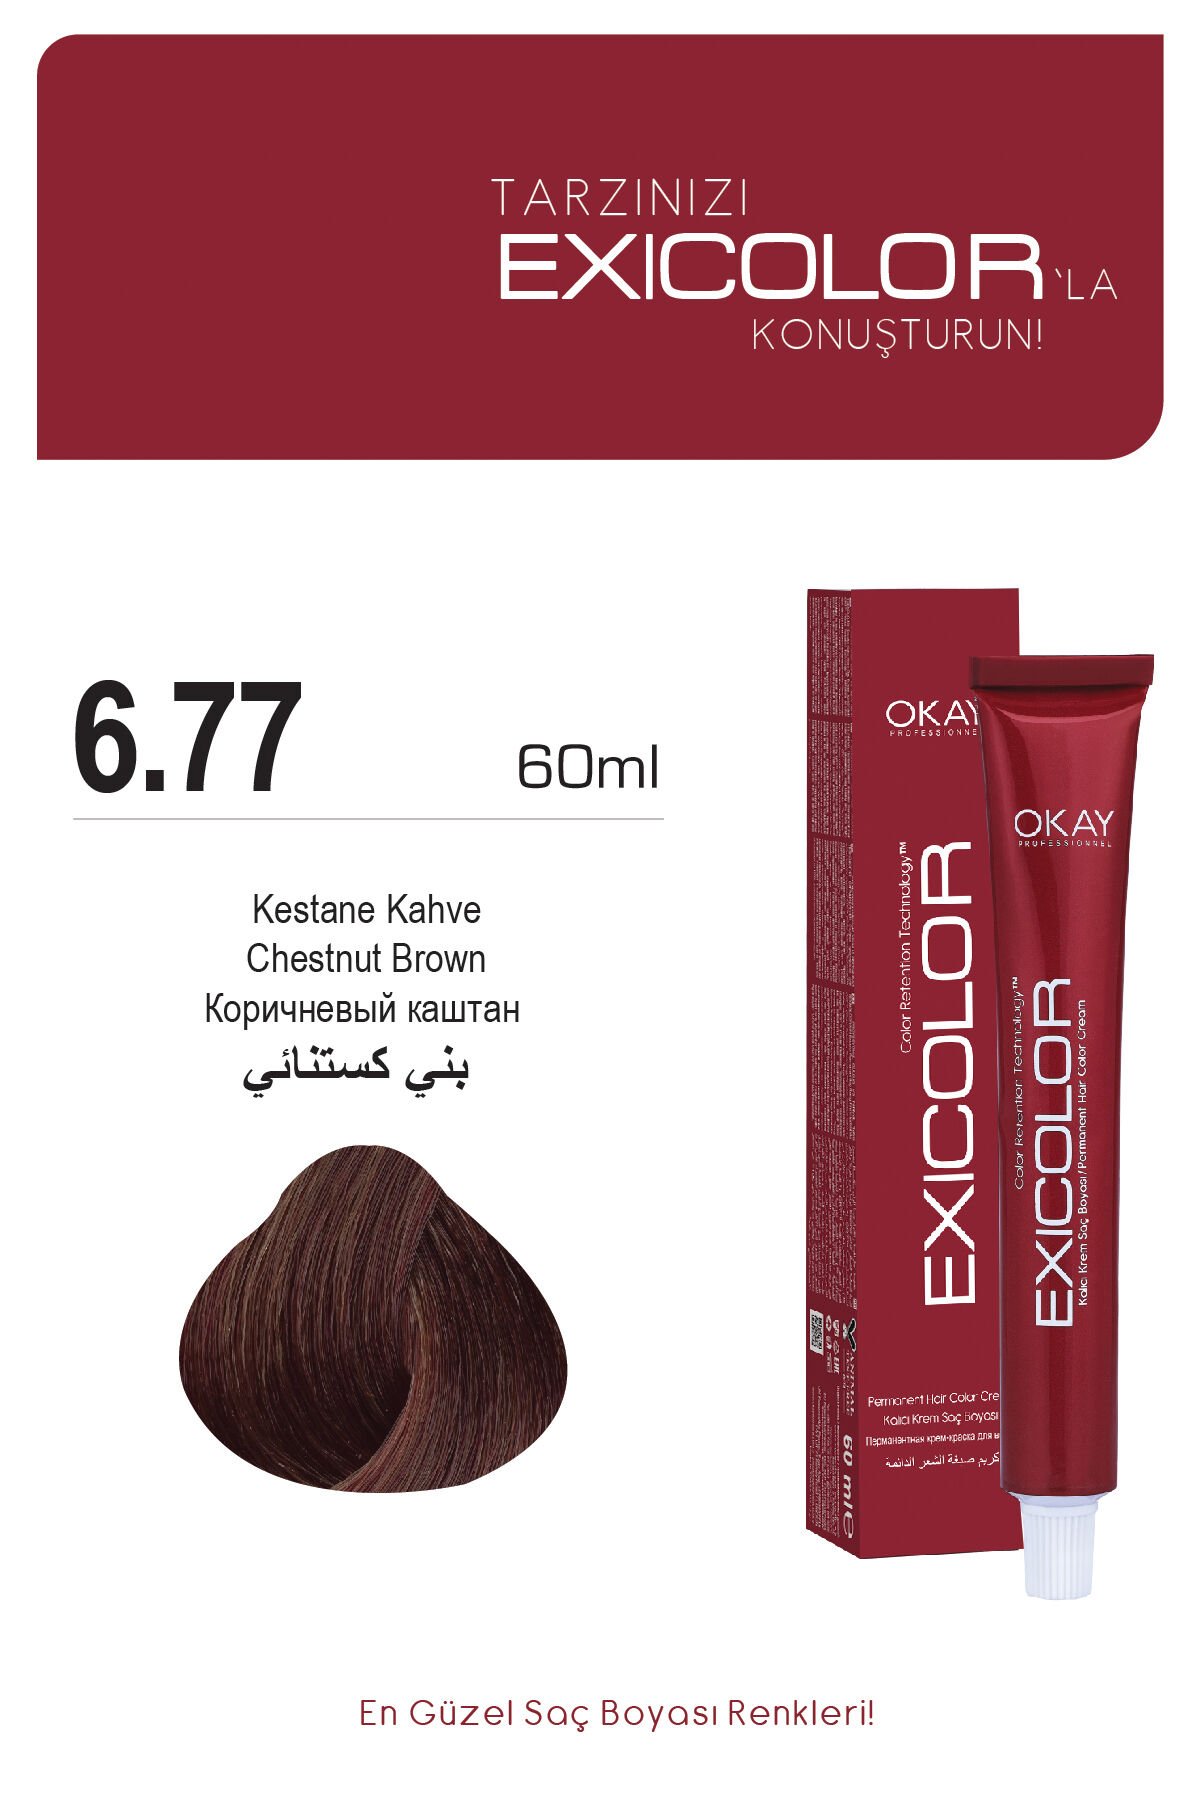 Exicolor 6.77 Kestane Kahve - Kalıcı Krem Saç Boyası 60 ml Tüp